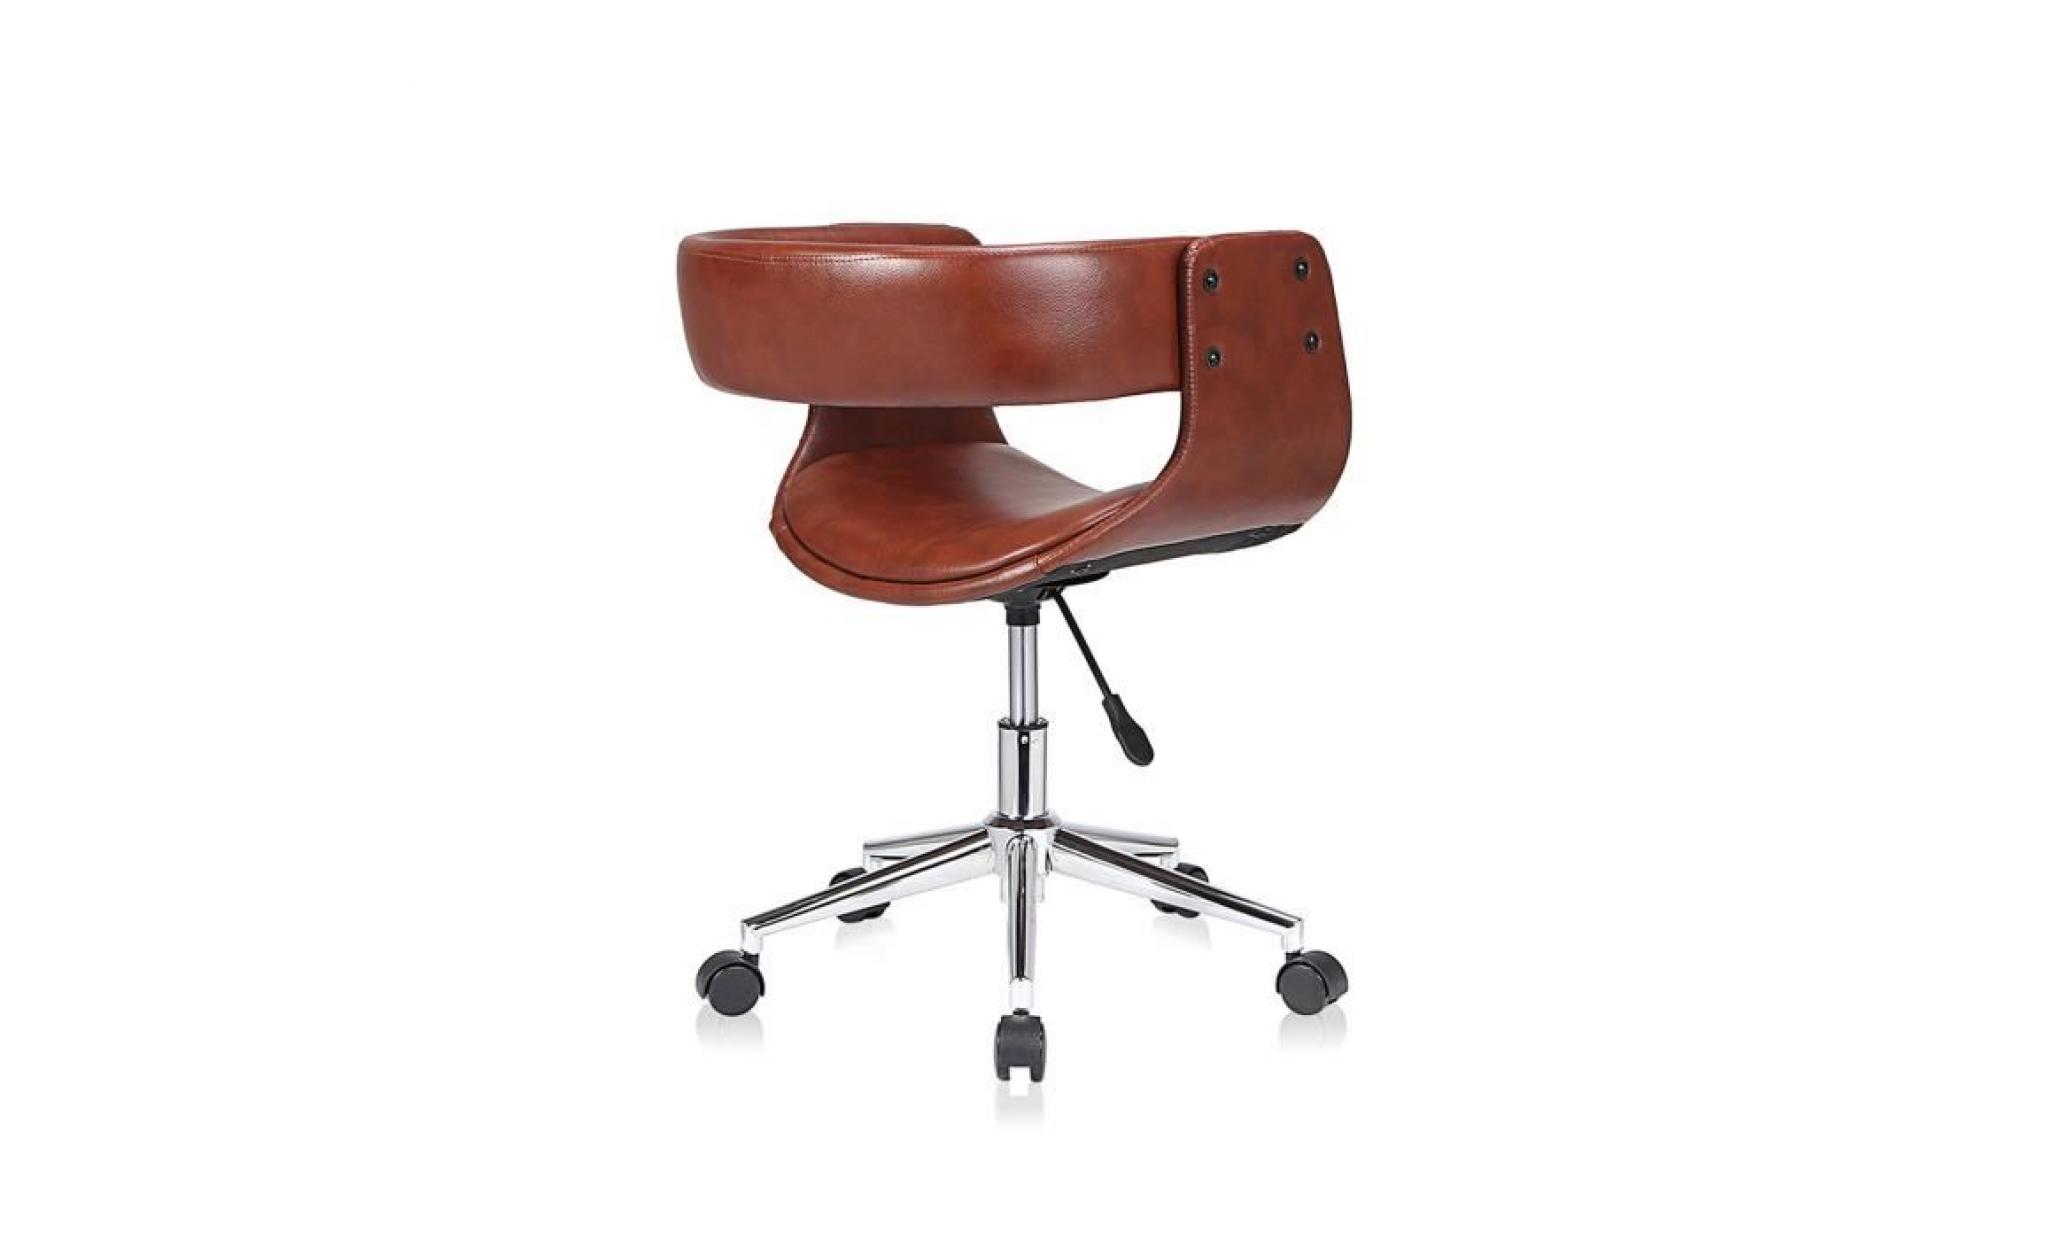 my sit tabouret de travail chaise de bureau francis en brun siège pivotant réglable en hauteur rembourré avec roulettes design rétro pas cher